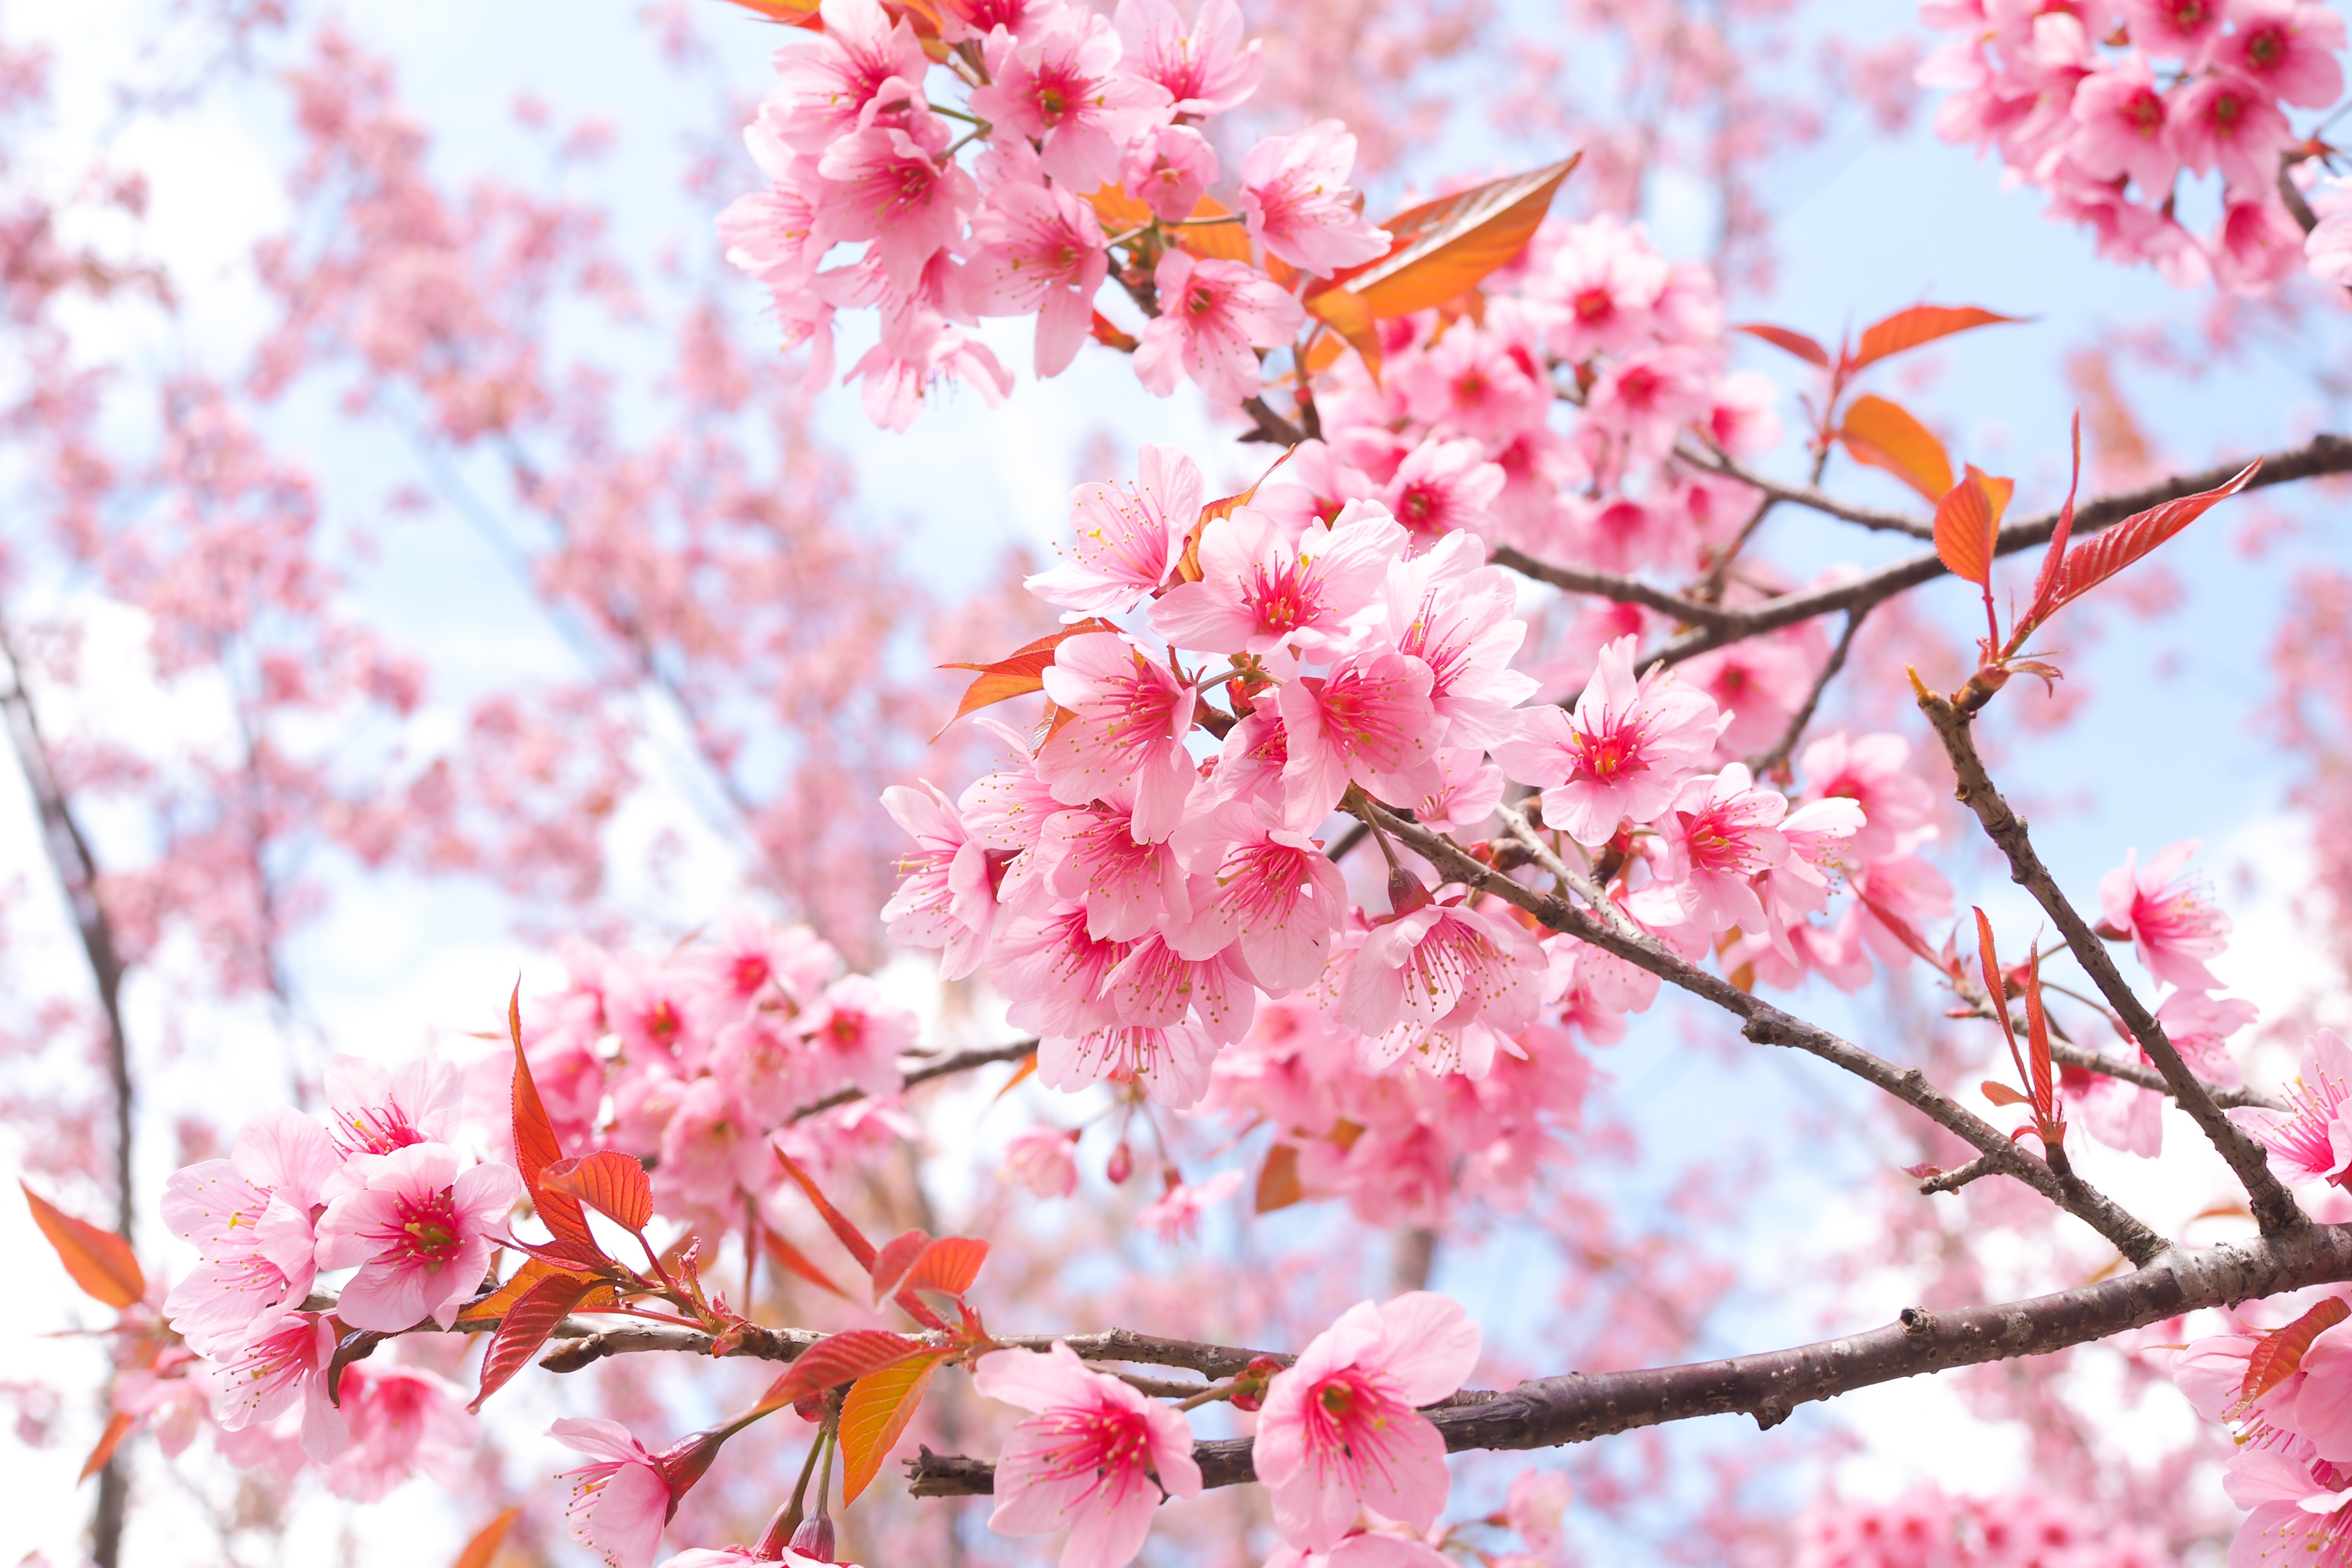 Bạn yêu thích những bức tranh nền được lấy cảm hứng từ thiên nhiên và muốn cảm nhận sự tinh khiết của hoa anh đào trong tầm mắt của mình? Hãy xem bức hình nền Cherry Blossom Tree Wallpaper của chúng tôi để thấy sự xuất sắc trong thiết kế và độ sắc nét của hình ảnh.